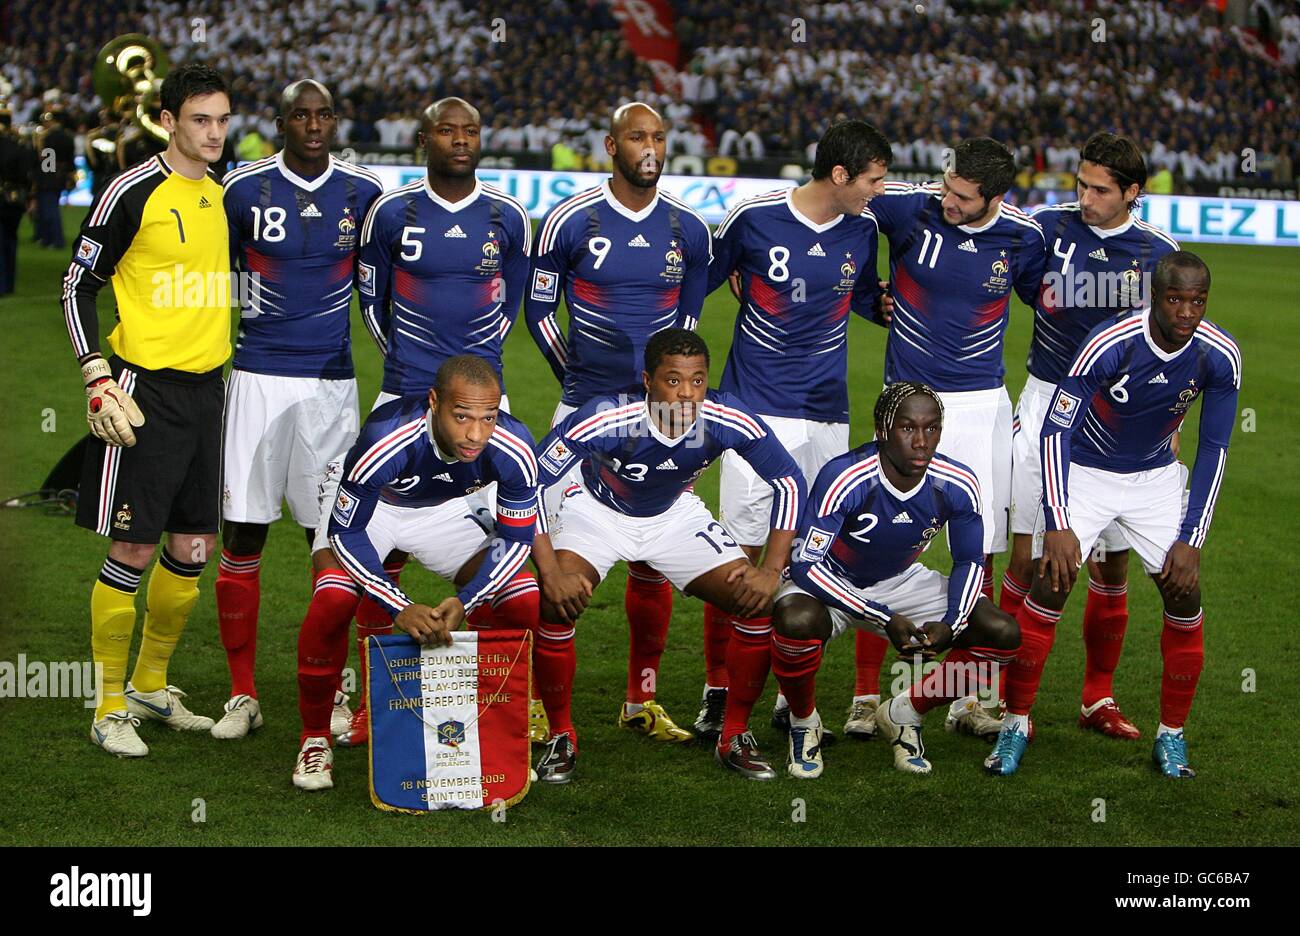 Football - coupe du monde de la FIFA 2010 - Play offs - second Leg - France  / République d'Irlande - Stade de France.Groupe d'équipe France Photo Stock  - Alamy